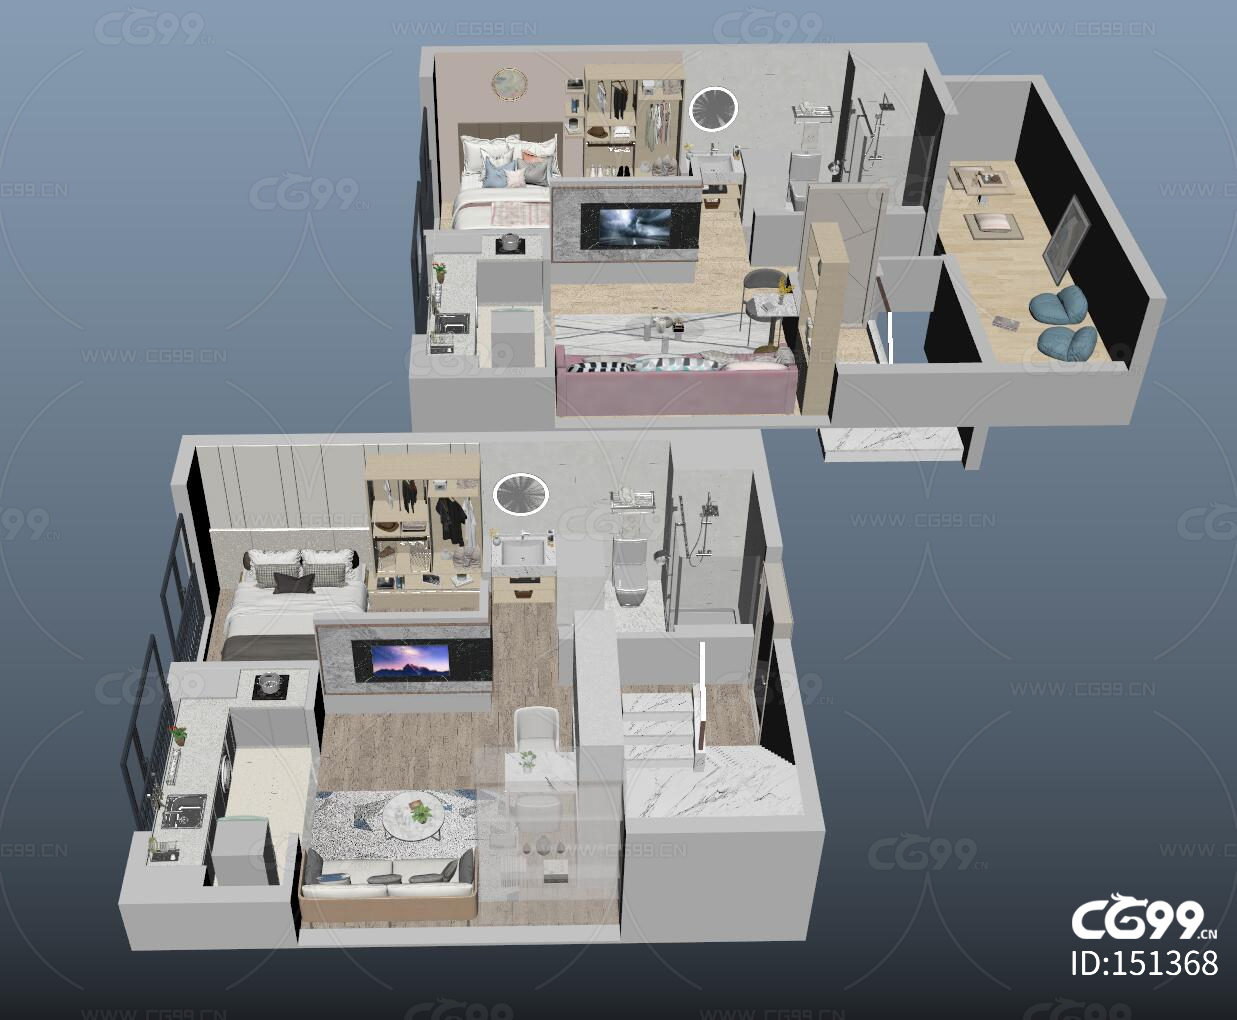 复式公寓上下层设计户型3D模型,有blend,max,mb,fbx,obj等格式(网盘下载)_整体效果模型下载-摩尔网CGMOL